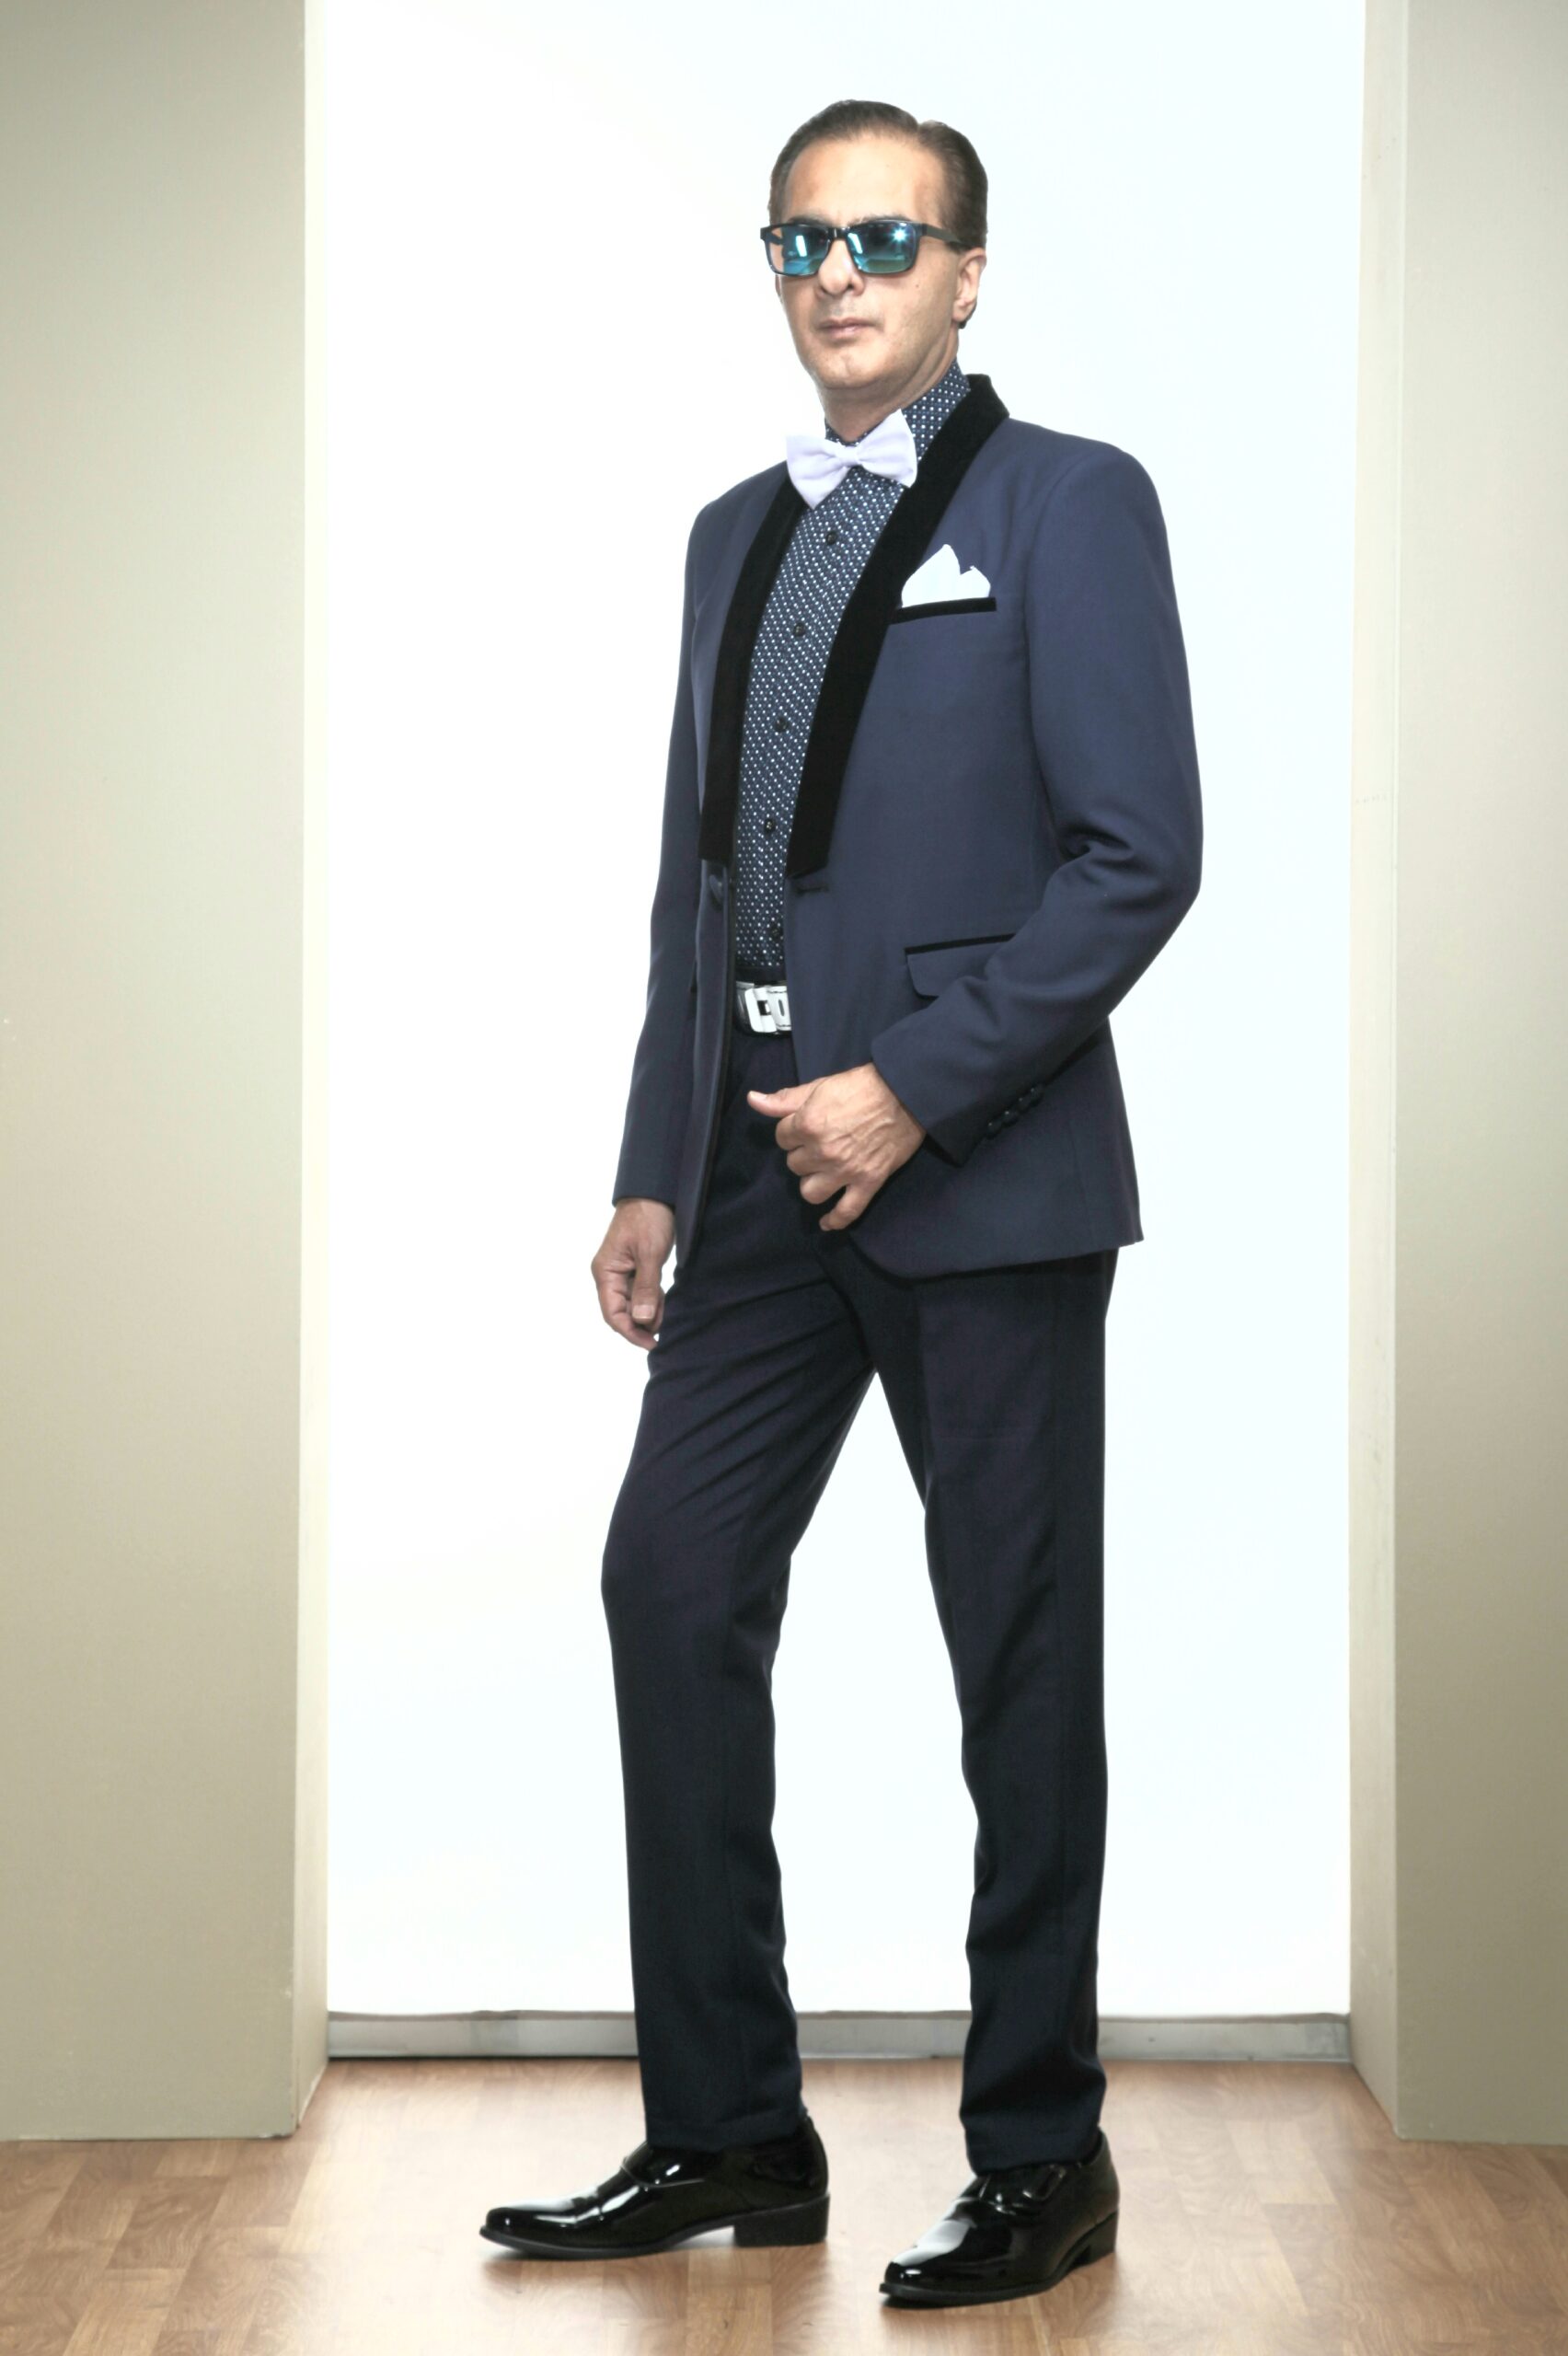 MST-5001-02-rent_rental_hire_tuxedo_suit_black_tie_suit_designer_suits_shop_tailor